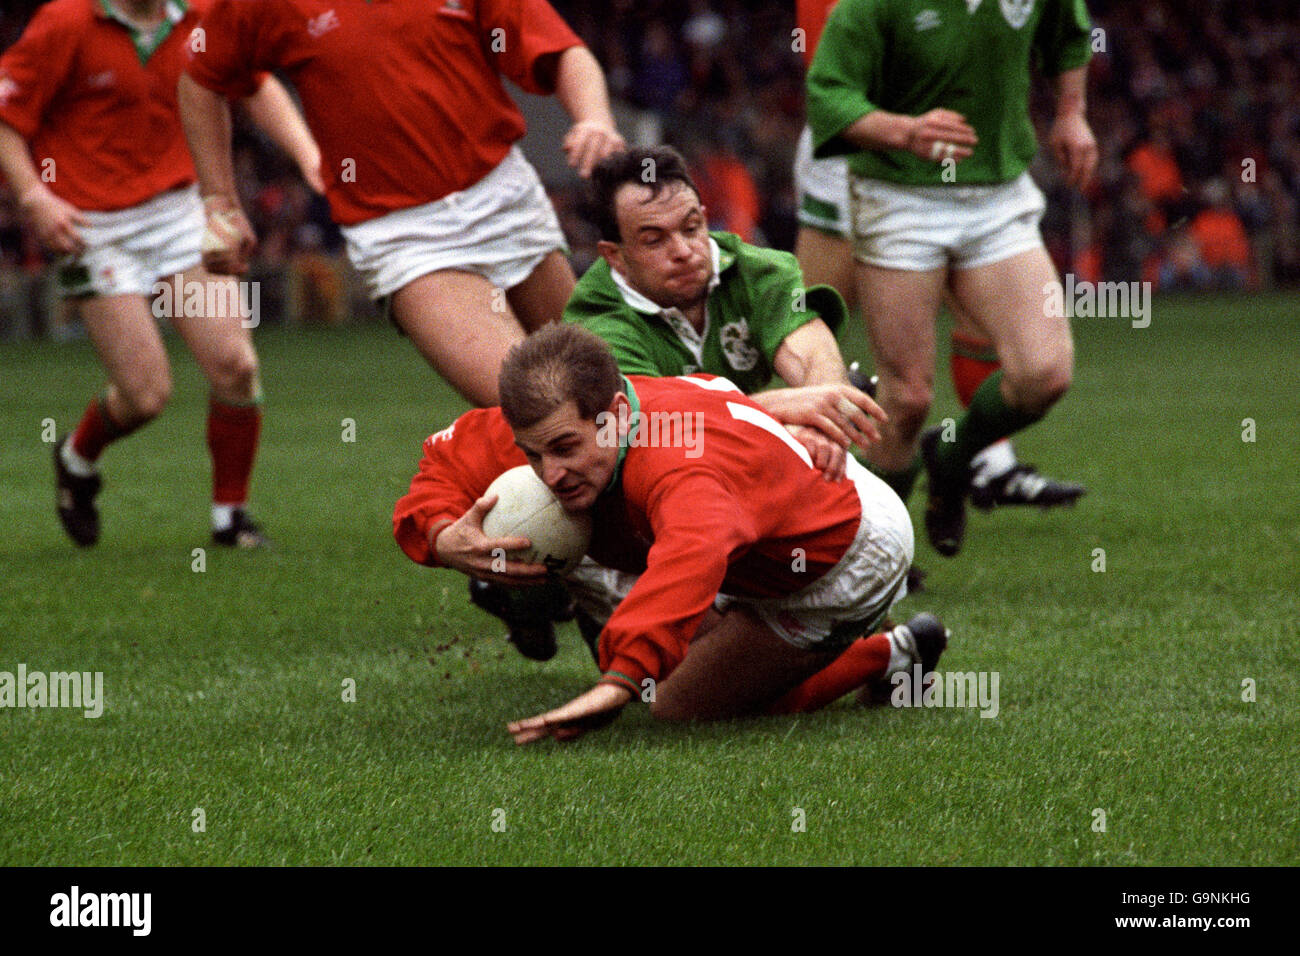 Rugby Union - Five Nations Championship - Wales / Irland - Nationalstadion. Der walisische Mike Rayer wird innerhalb von Zentimetern von der irischen Testlinie heruntergefahren Stockfoto